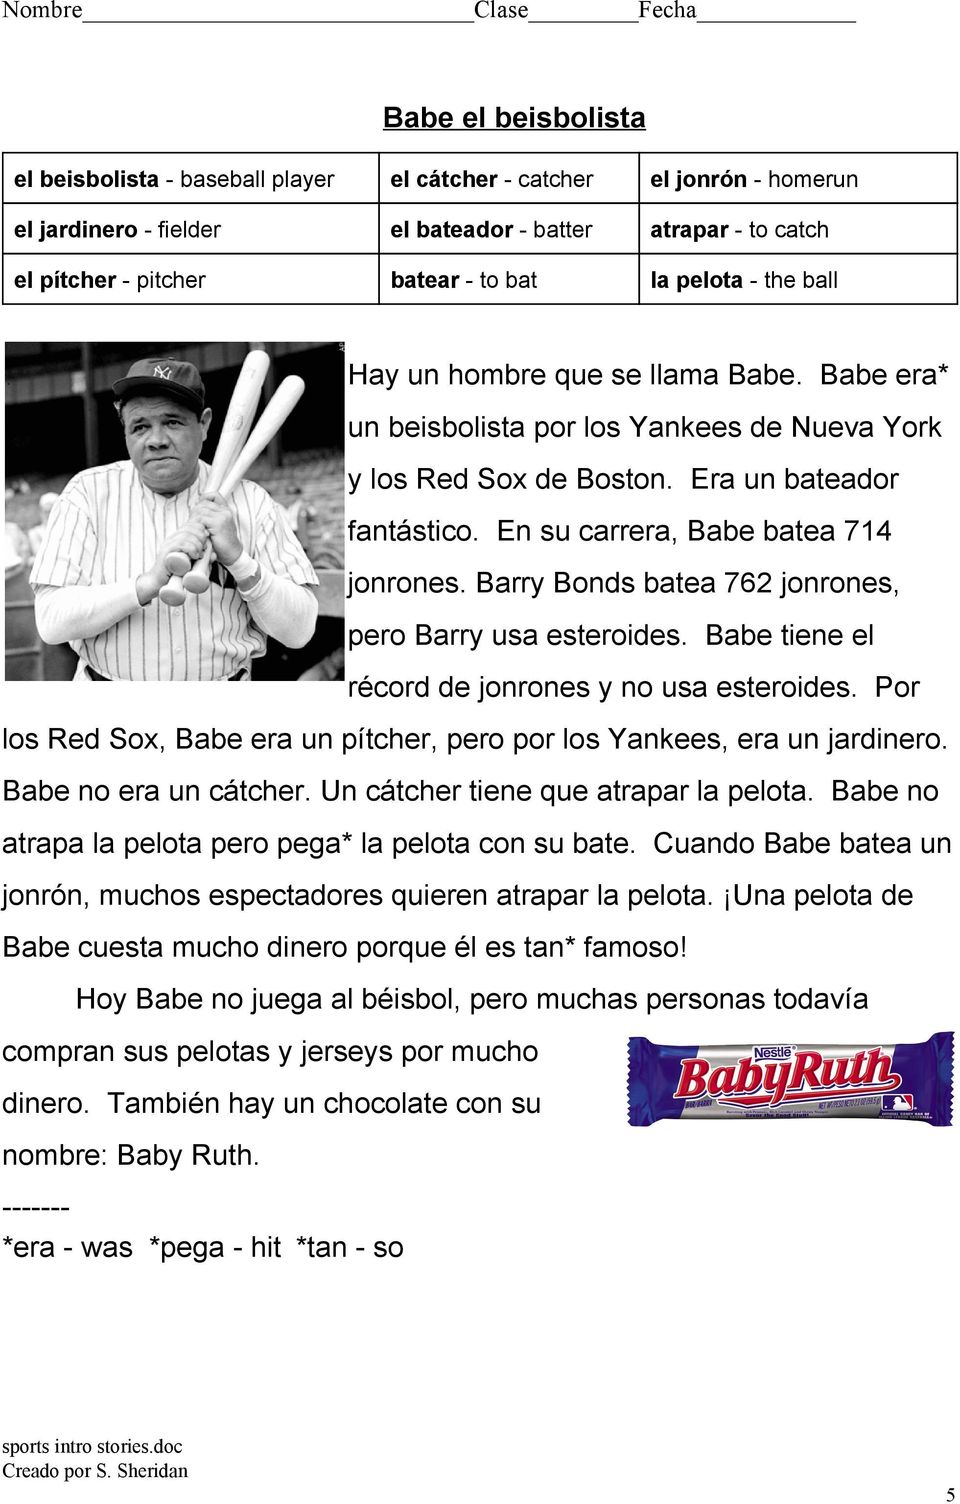 Barry Bonds batea 762 jonrones, pero Barry usa esteroides. Babe tiene el récord de jonrones y no usa esteroides. Por los Red Sox, Babe era un pítcher, pero por los Yankees, era un jardinero.